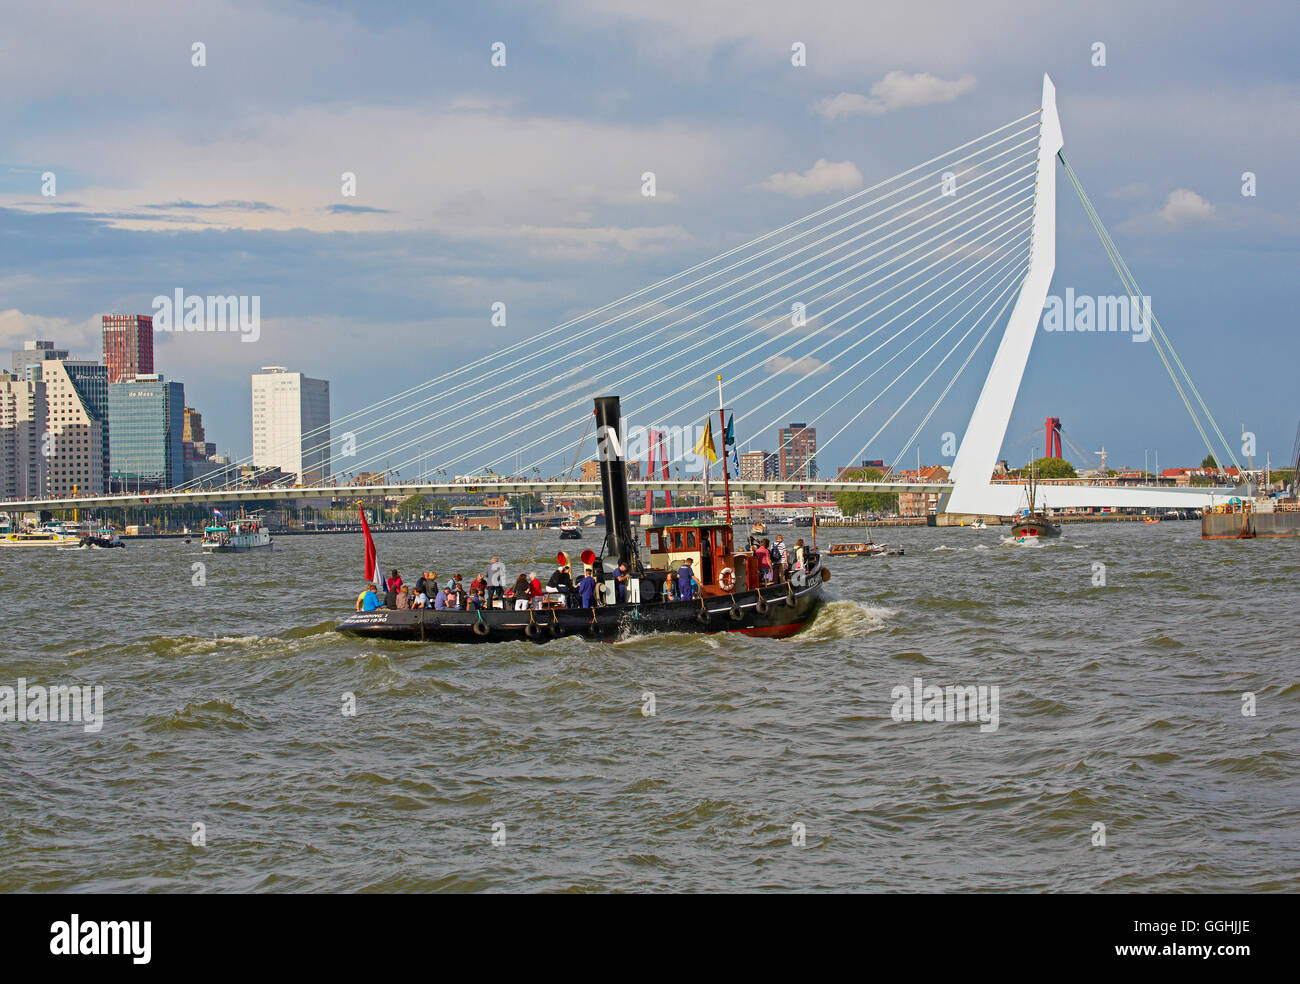 Les nouveaux navires à passagers de Rotterdam à Rotterdam Harbour, pont Erasmus, Province du Sud des Pays-Bas, la Hollande du Sud, Netherla Banque D'Images